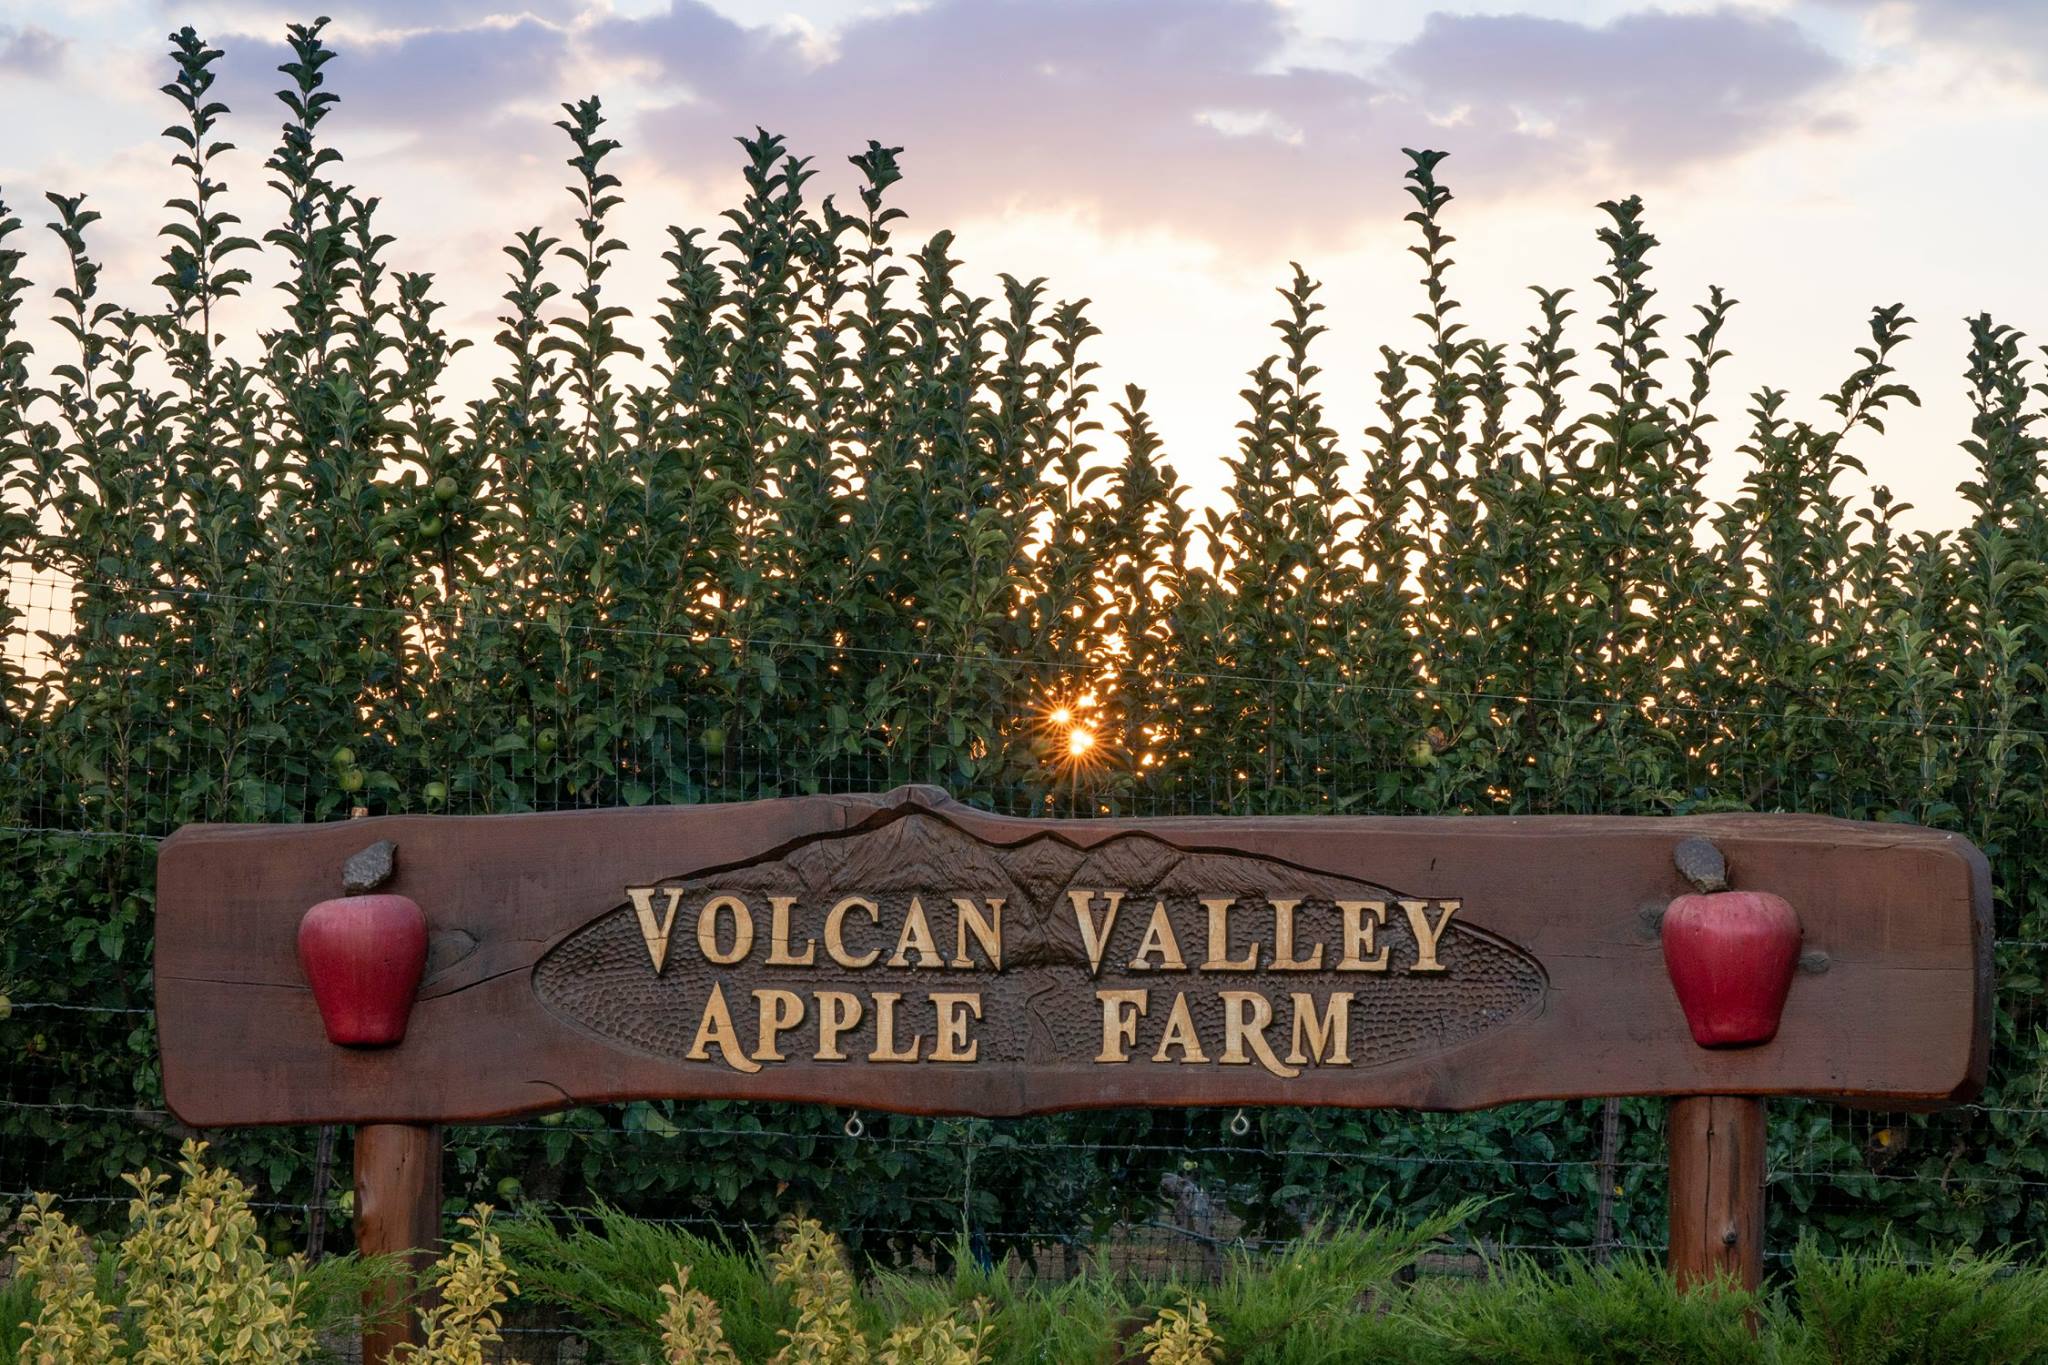 Volcan Valley Apple Farm in Julian